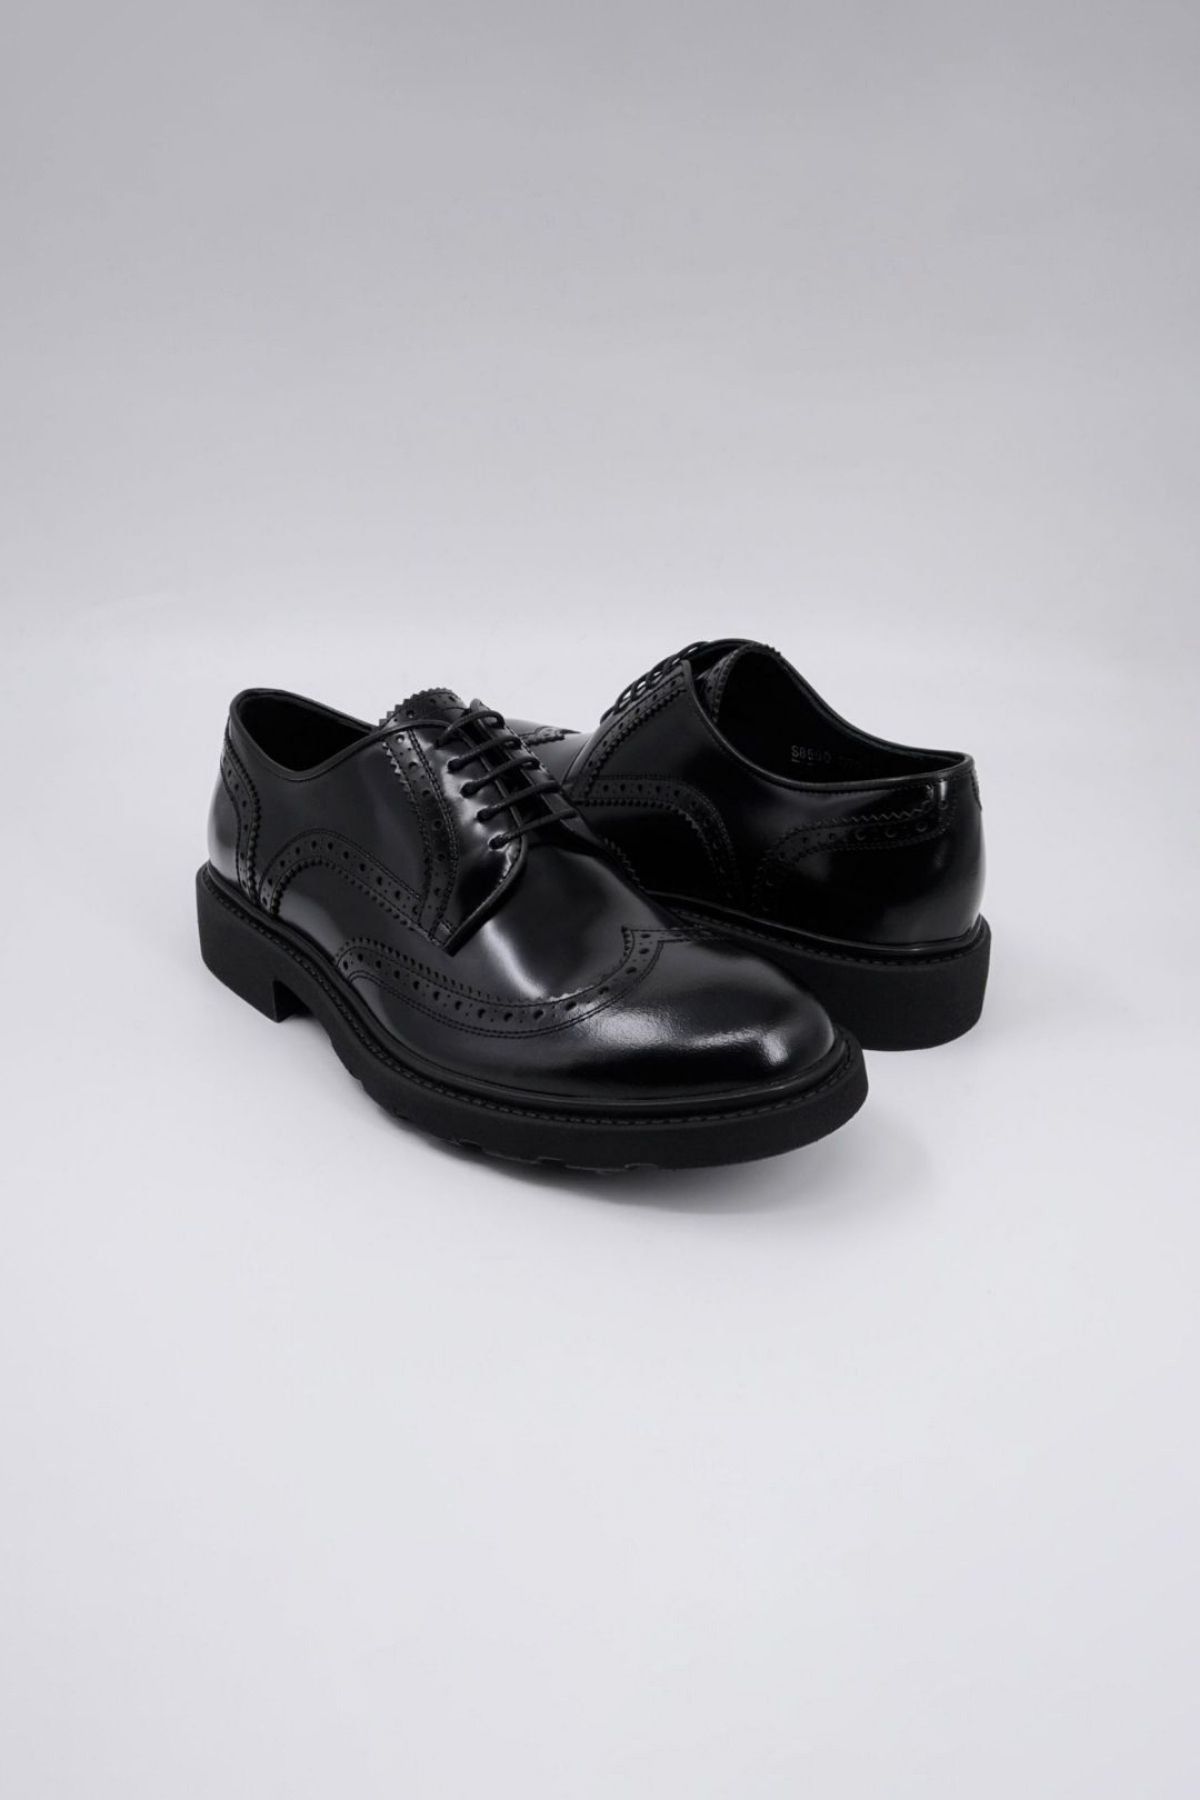 Trust Shoes Siyah Zımbalı Erkek Casual Ayakkabı